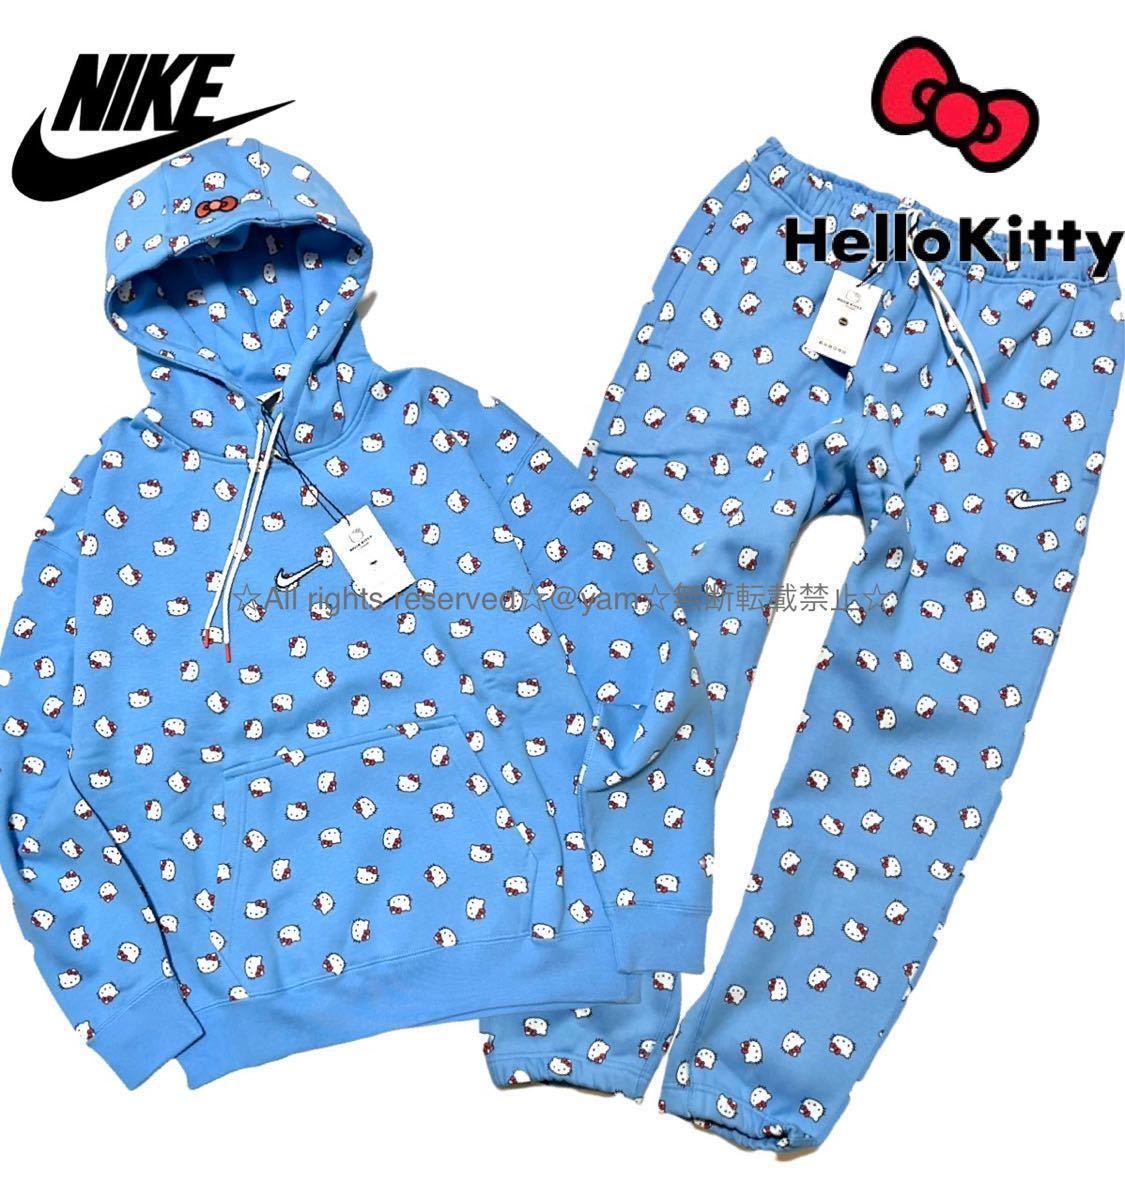 L 新品 NIKE ナイキ x ハローキティ コラボ 裏起毛 上下セット パーカー パンツ セットアップ Hello Kitty ブルー系総柄